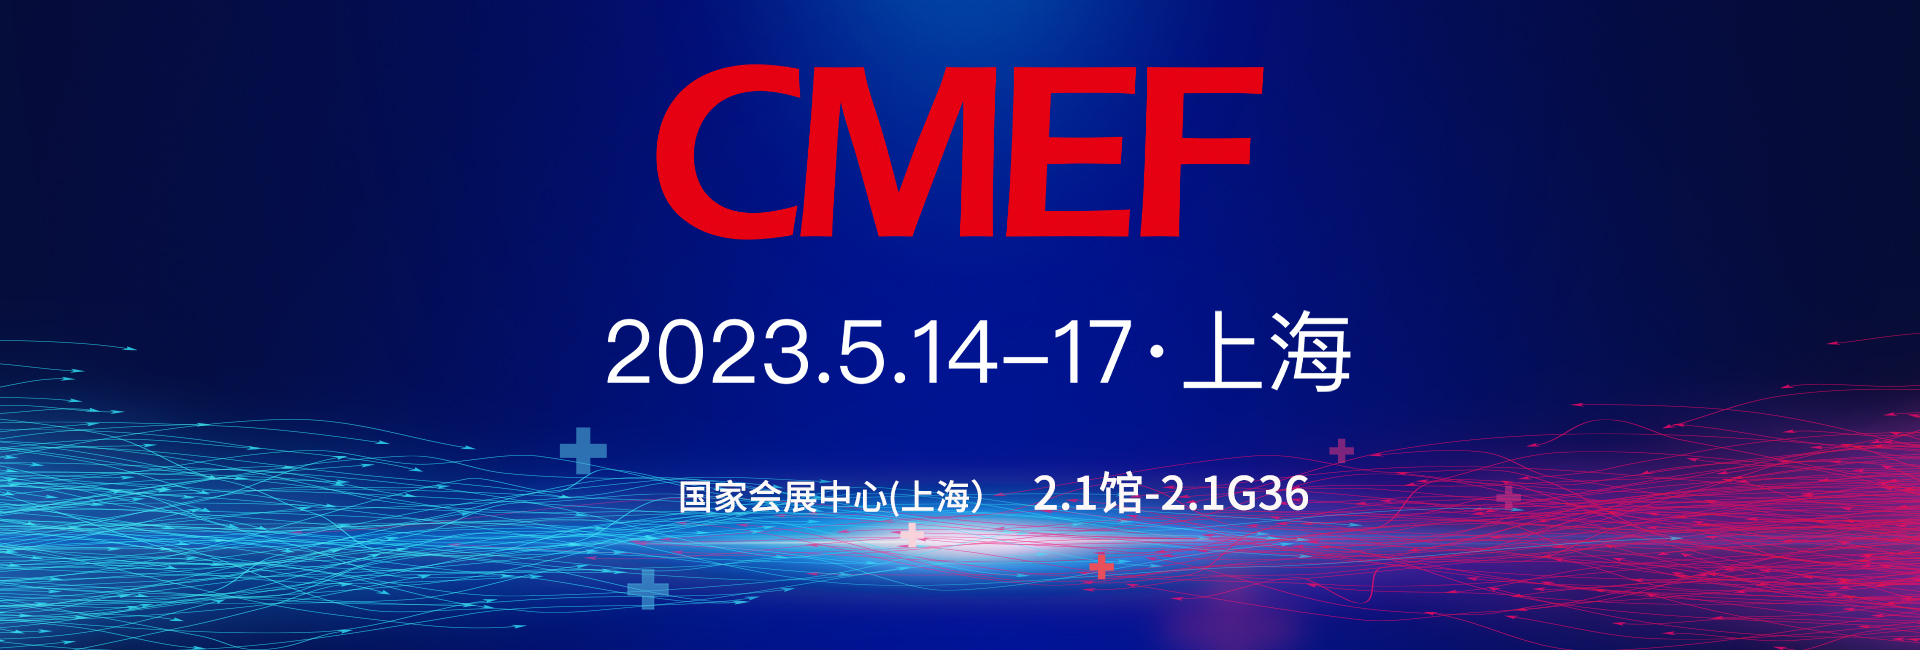 CMEF标题 拷贝.jpg